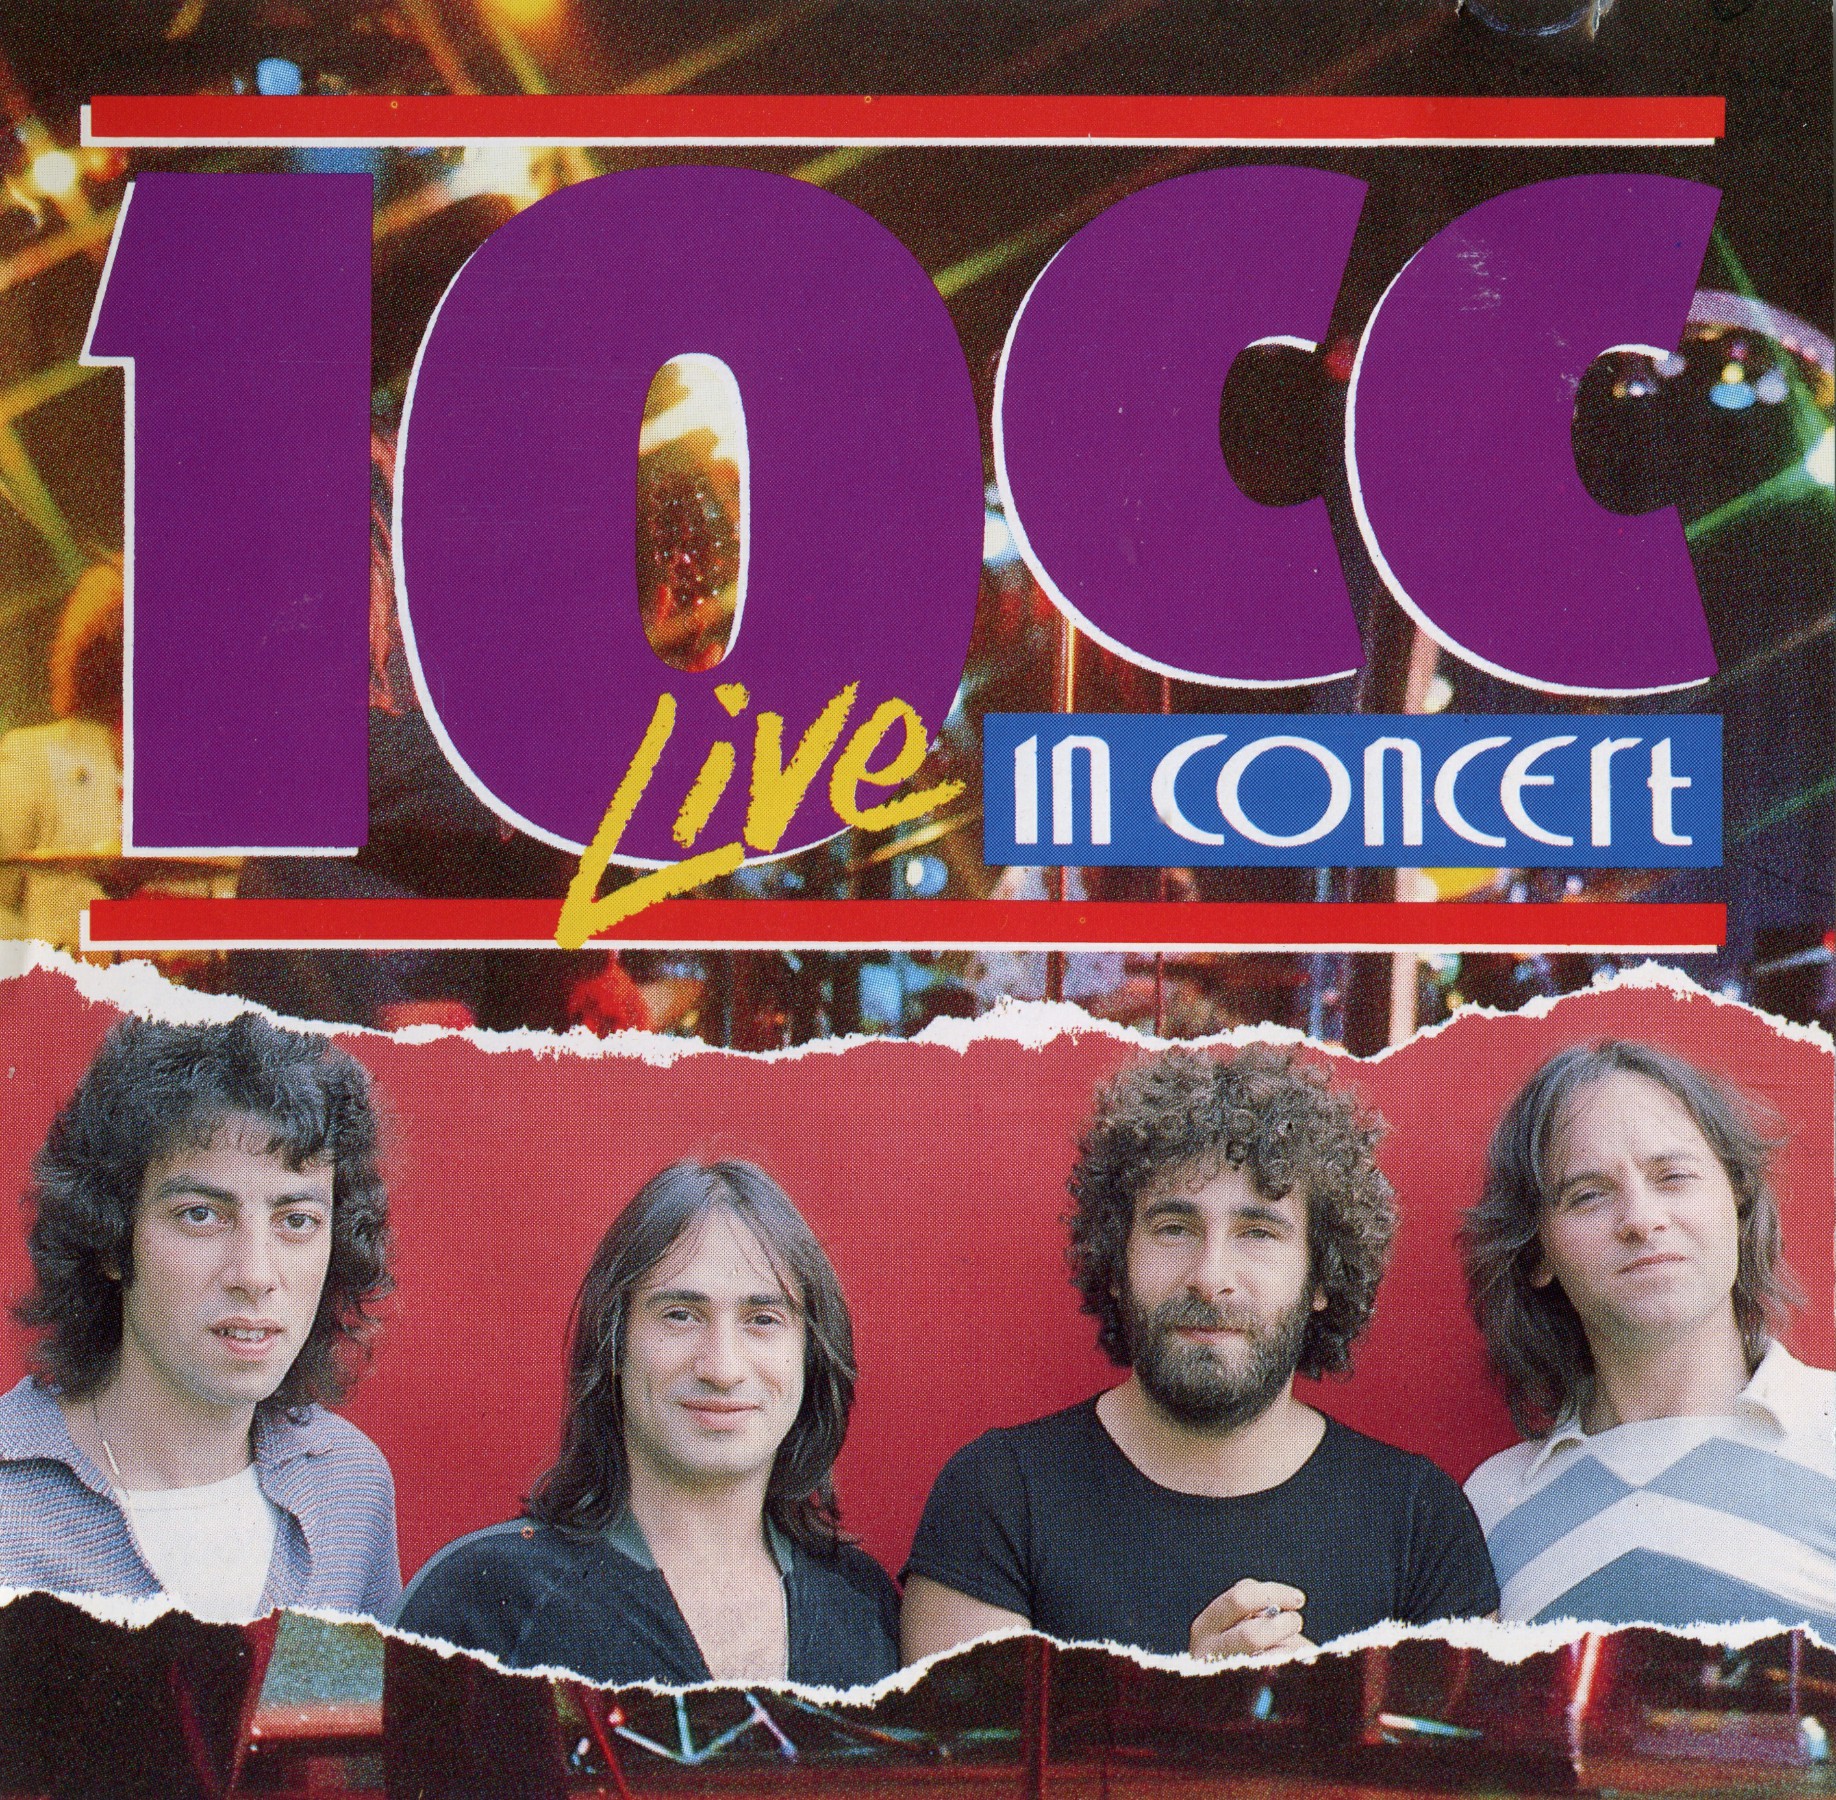 T me cc live. 10 Cc "10 cc". 10cc Band. Группа 10cc альбомы. 10cc фото группы.